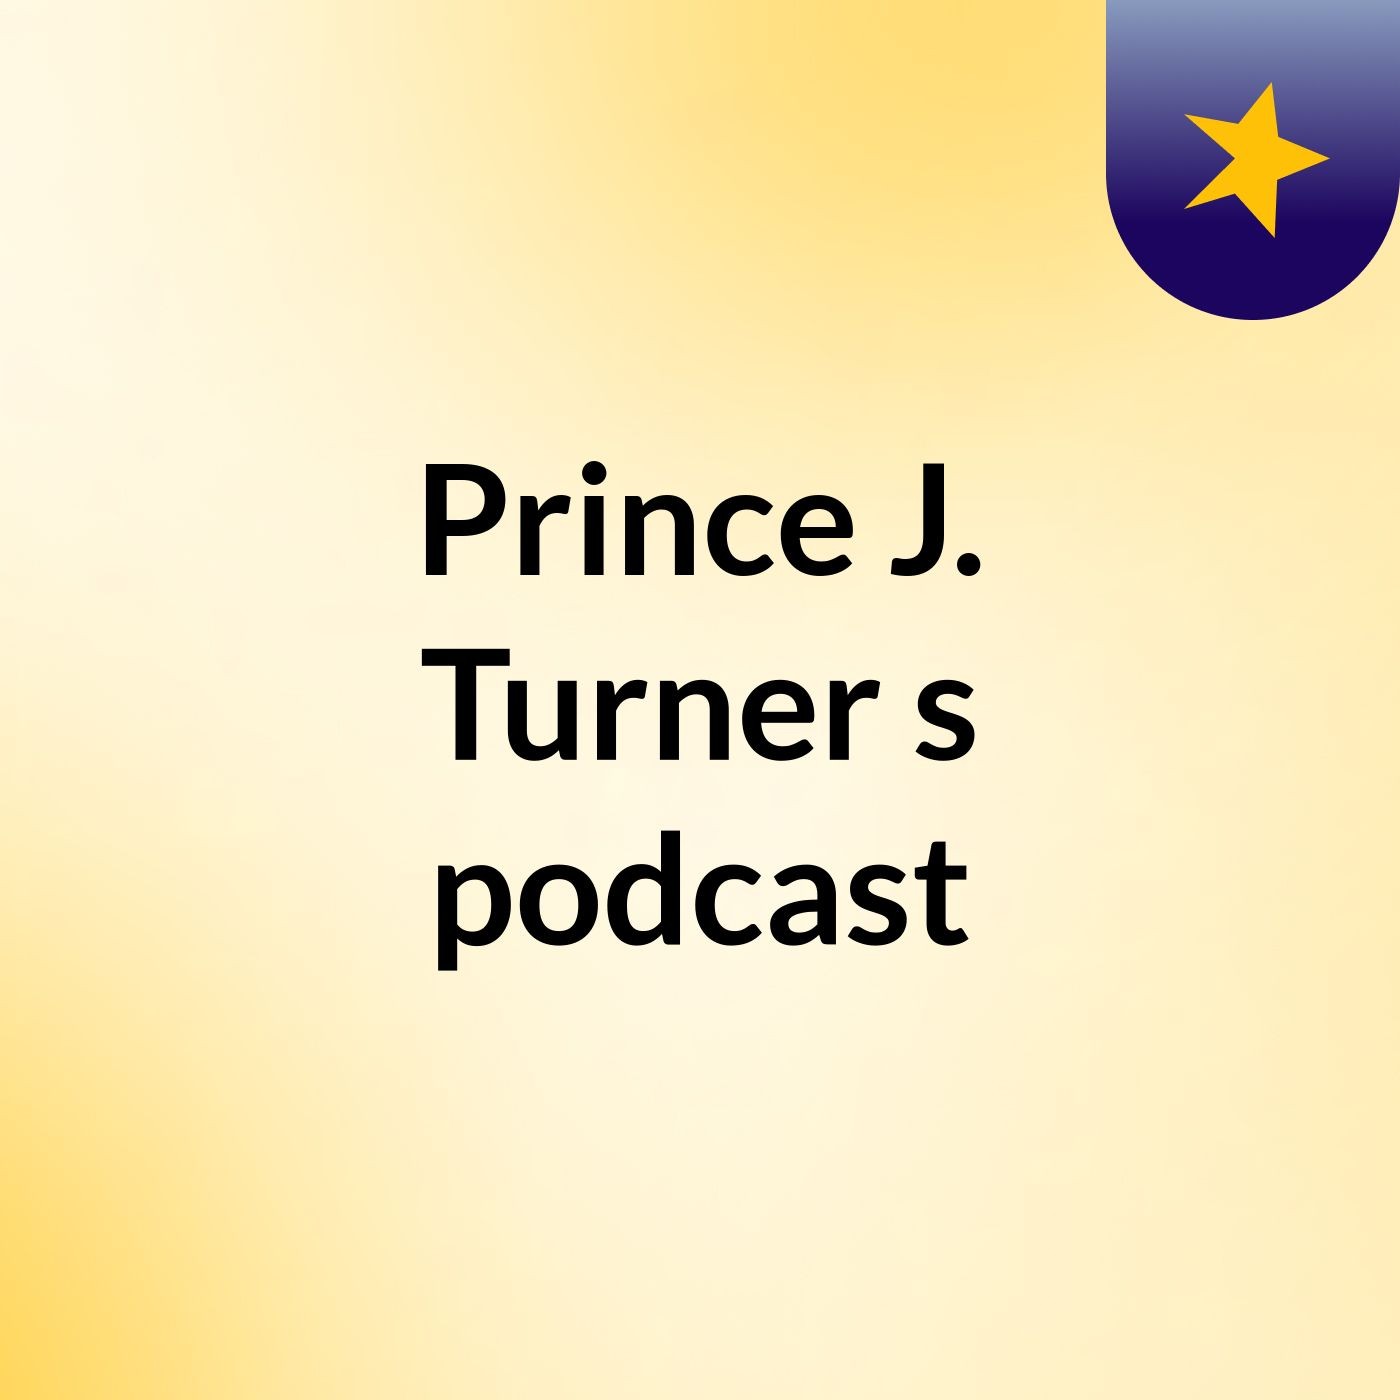 Prince J. Turner's podcast